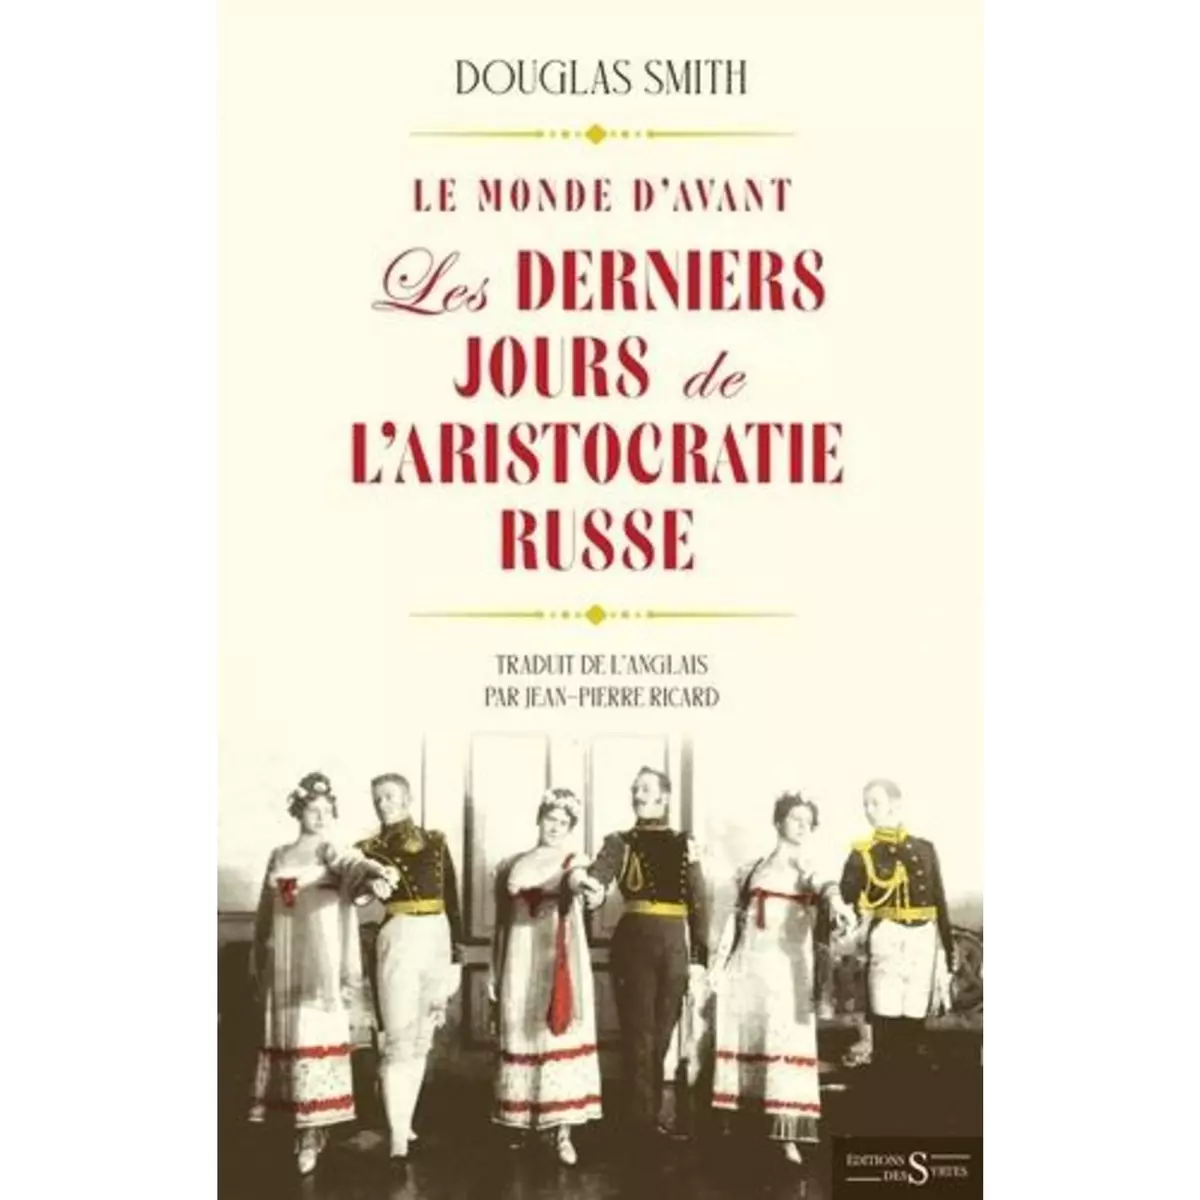  LE MONDE D'AVANT. LES DERNIERS JOURS DE L'ARISTOCRATIE RUSSE, Smith Douglas